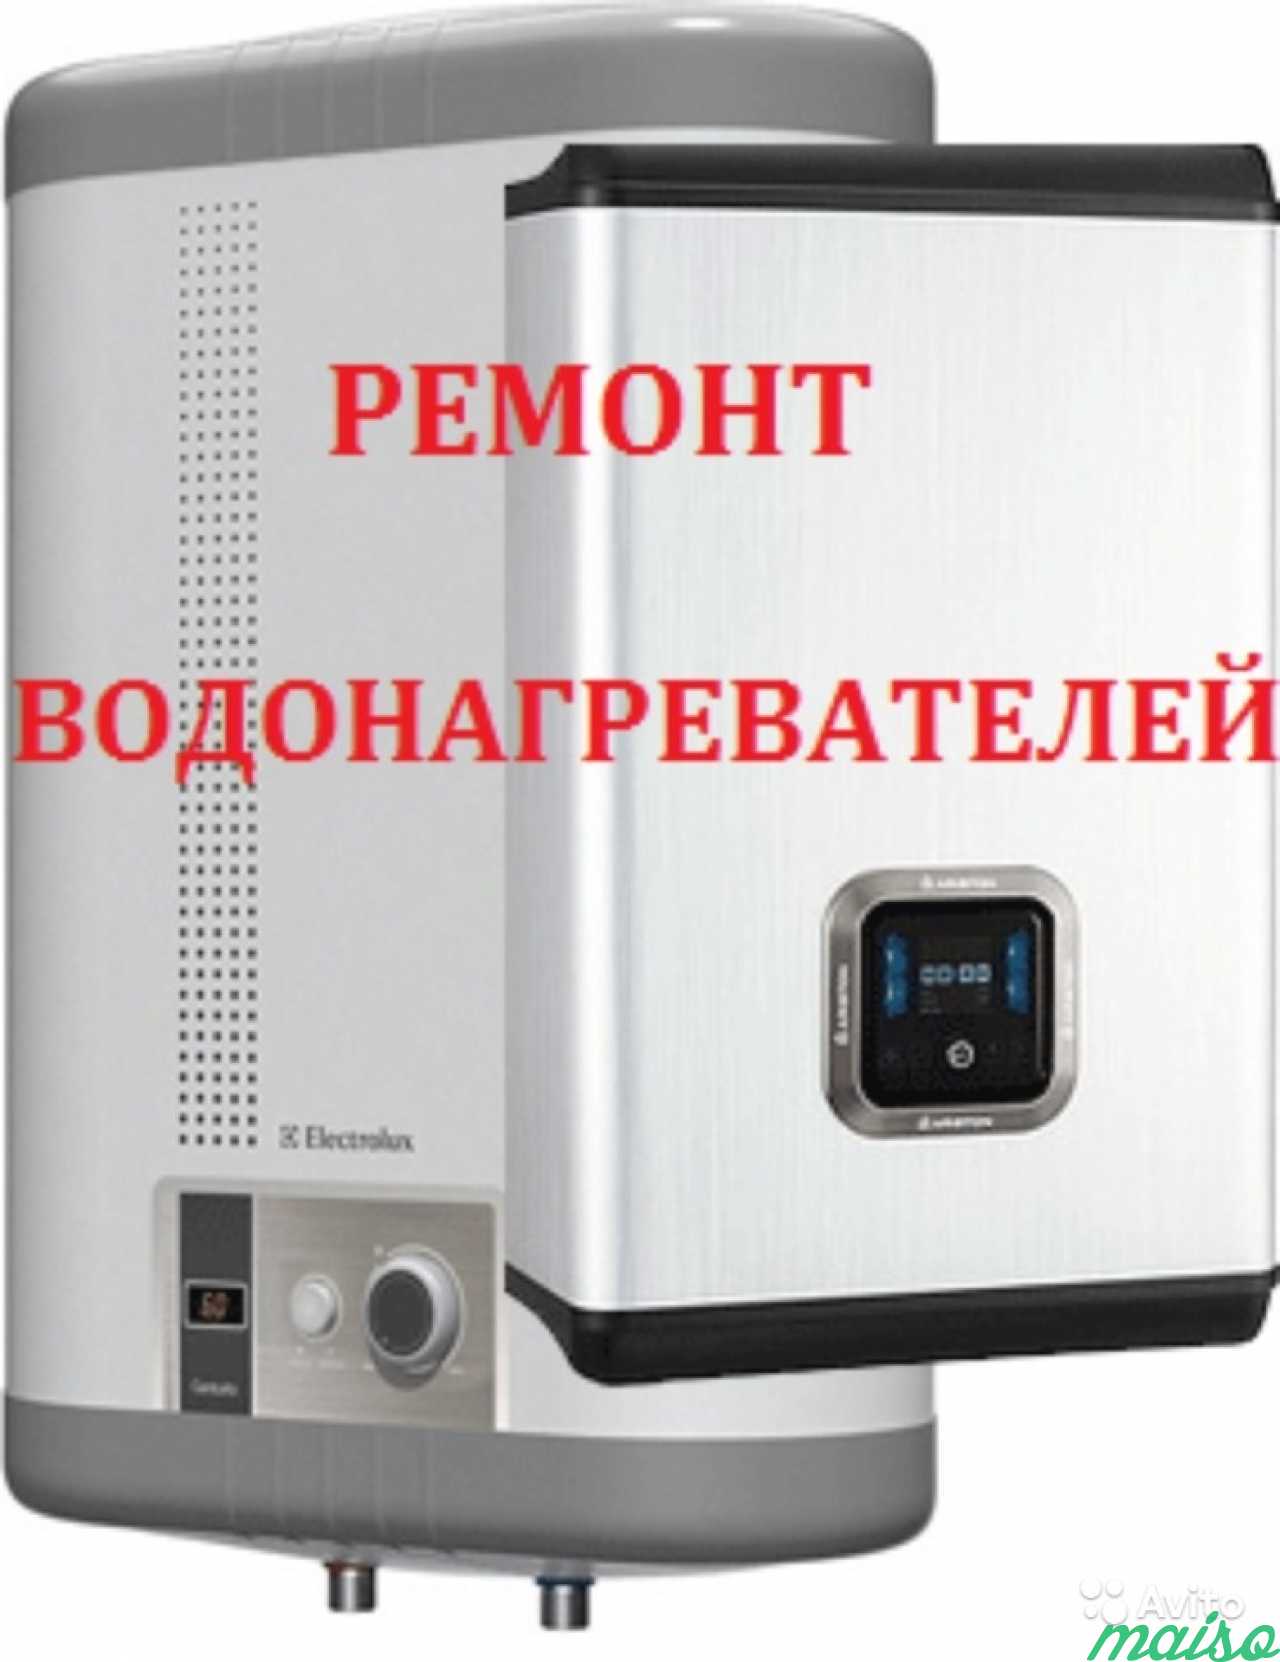 Обслуживание водонагревателя в Санкт-Петербурге. Фото 1